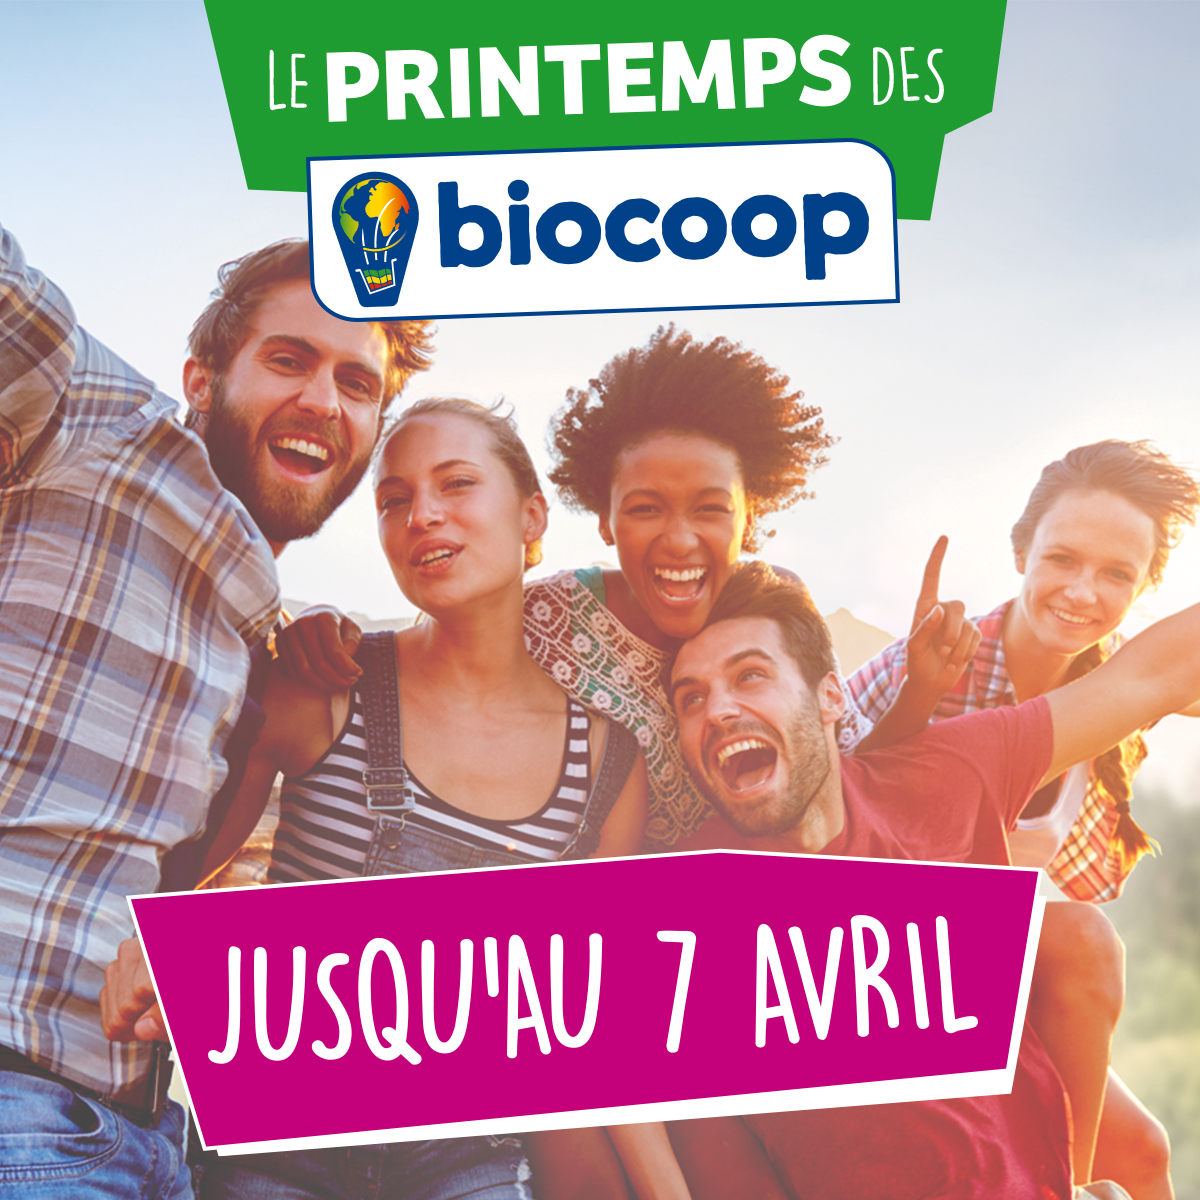 PROLONGATION du "Printemps des Biocoop" jusqu'au samedi 7 avril